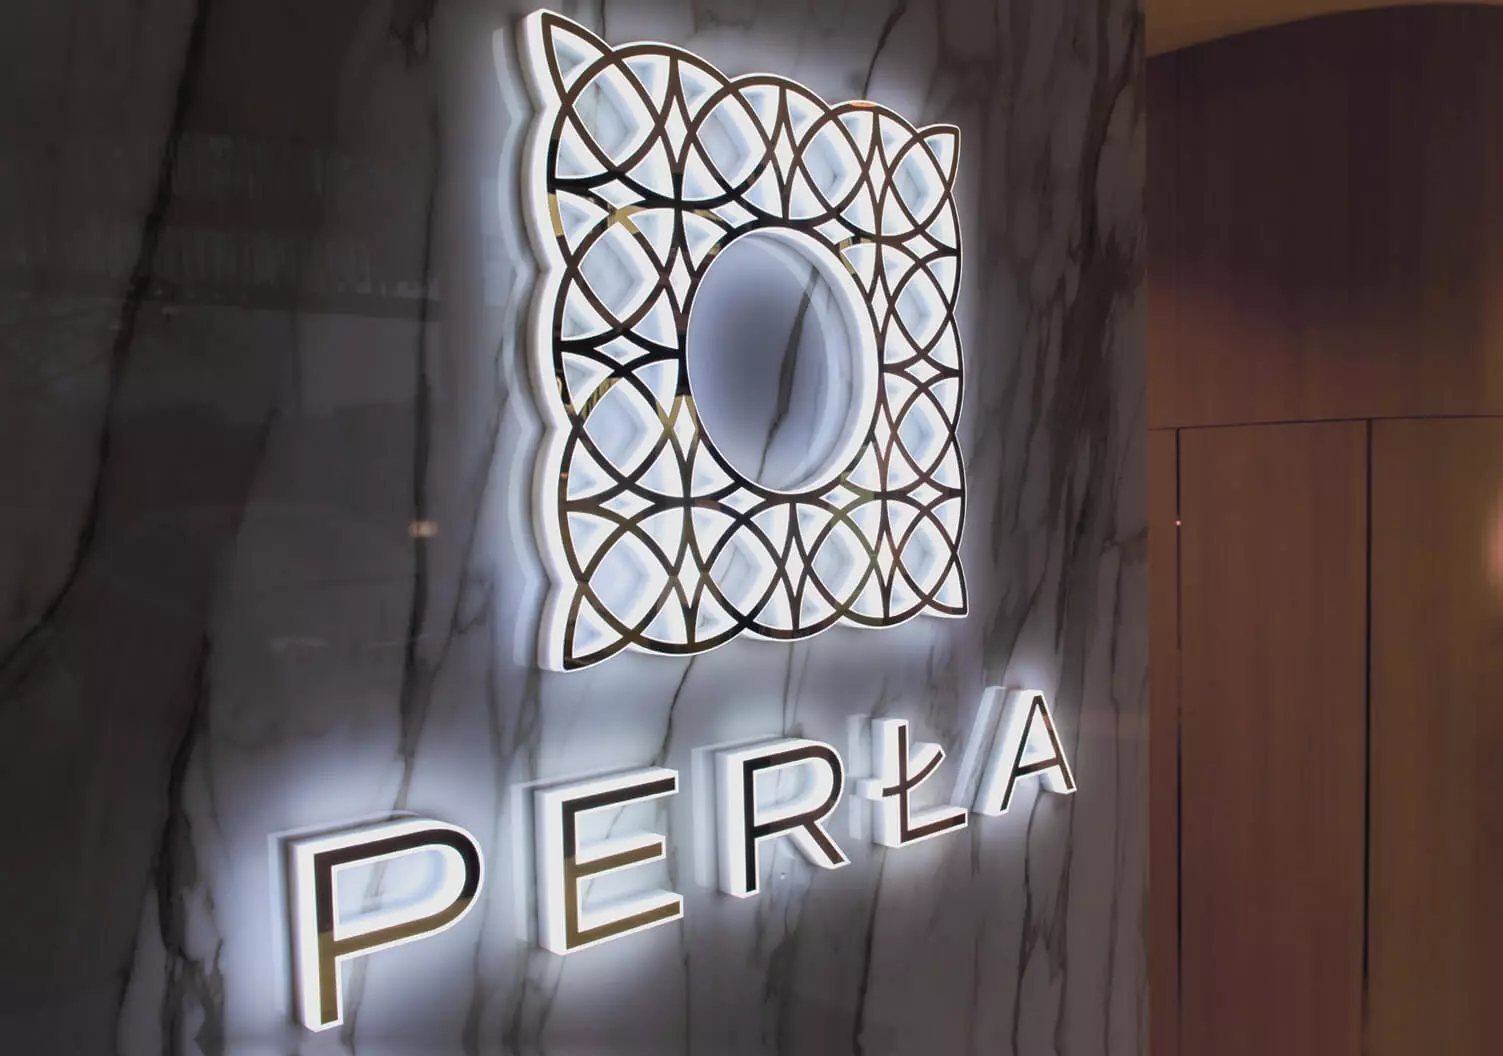 Perle - Logo éclairé avec lettres LED latérales